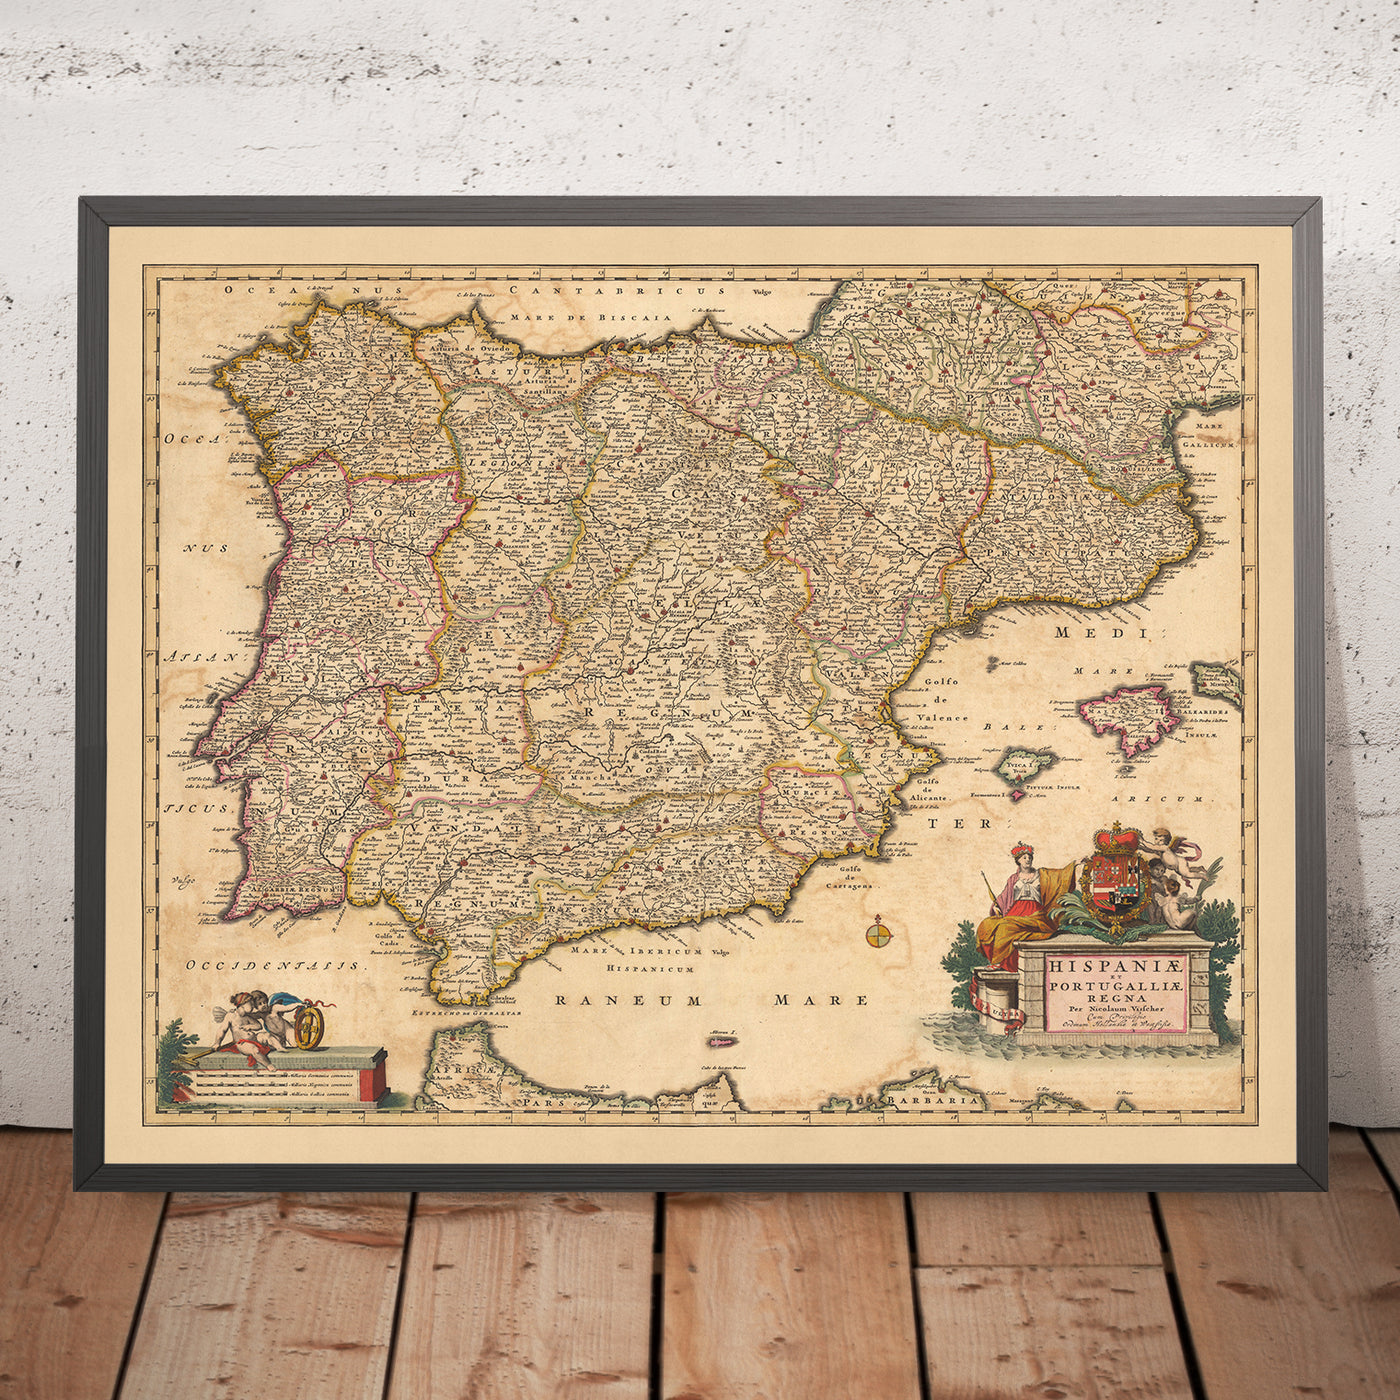 Antiguo mapa de los reinos de España y Portugal de Visscher, 1690: Madrid, Lisboa, Barcelona, Gibraltar, Oporto